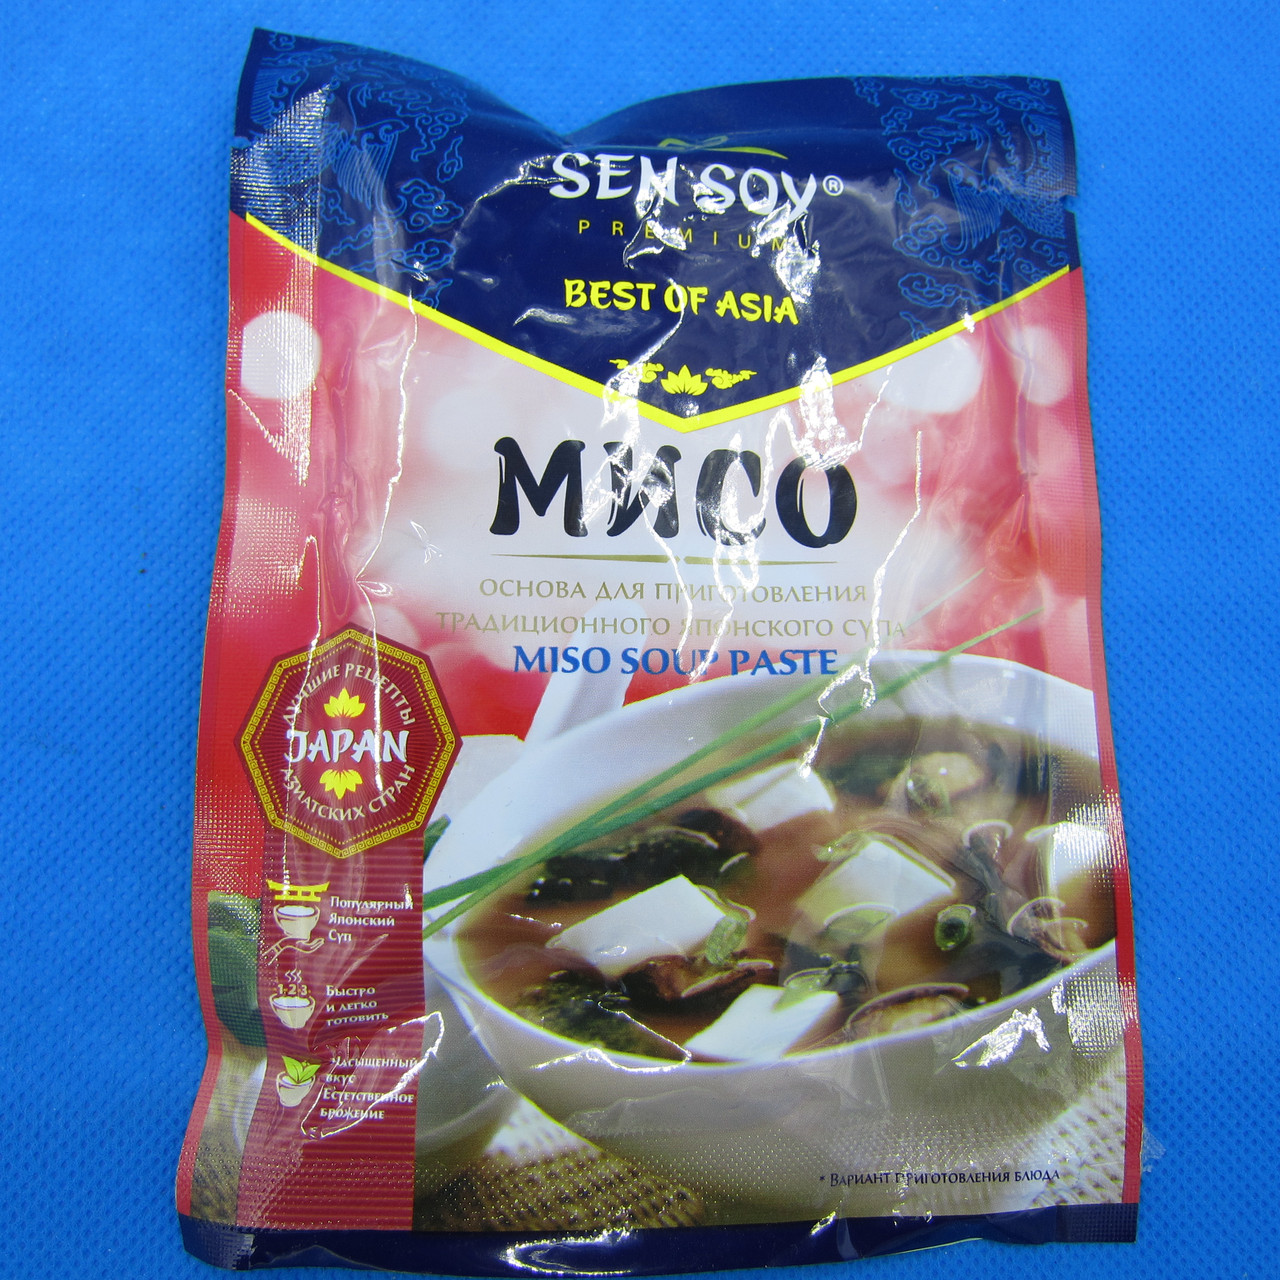 MISO SOUP PASTE / основа для приготовления японского супа 80 гр.